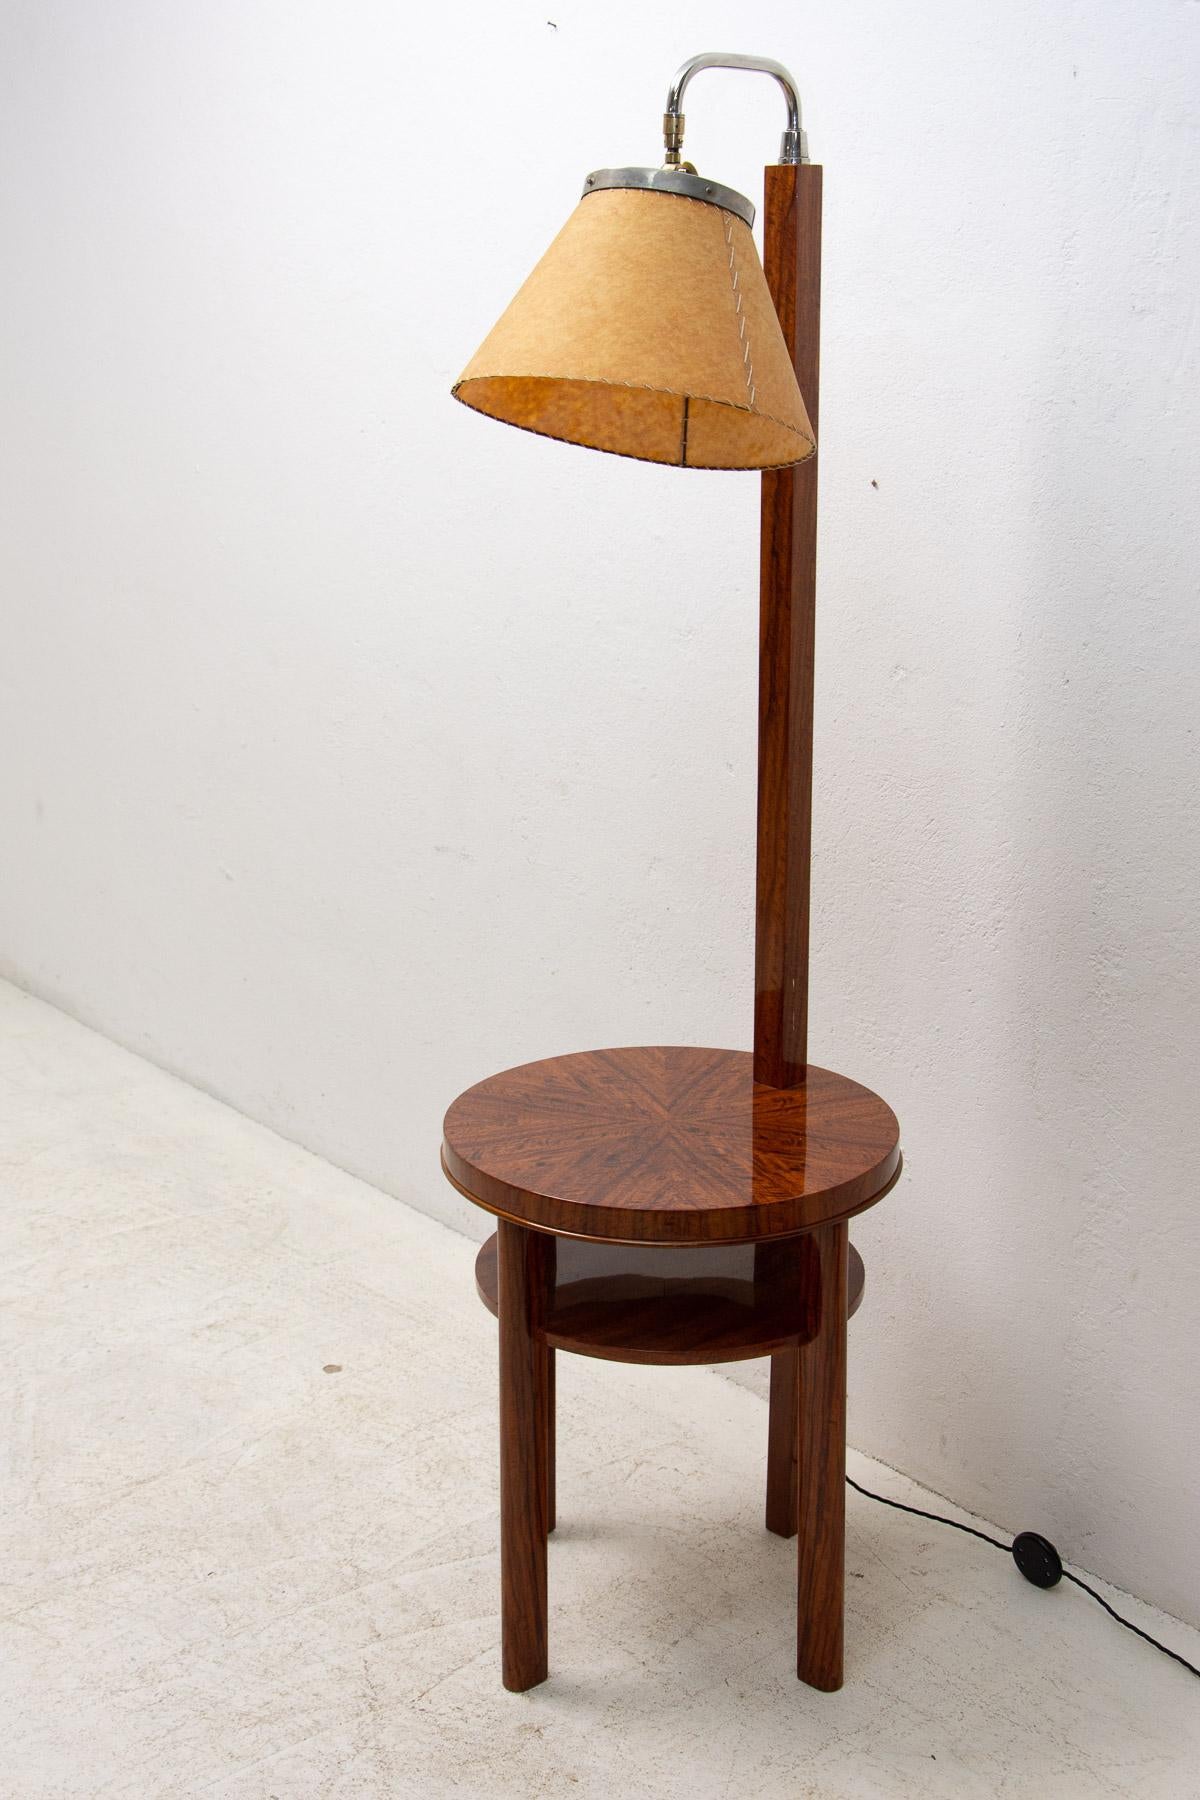 Ce magnifique lampadaire de style ART DECO a été fabriqué dans les années 1930 dans l'ancienne Tchécoslovaquie.

La structure de la lampe est faite de chrome et de noyer.

Il est doté d'un abat-jour en plastique. Peut également être utilisé comme